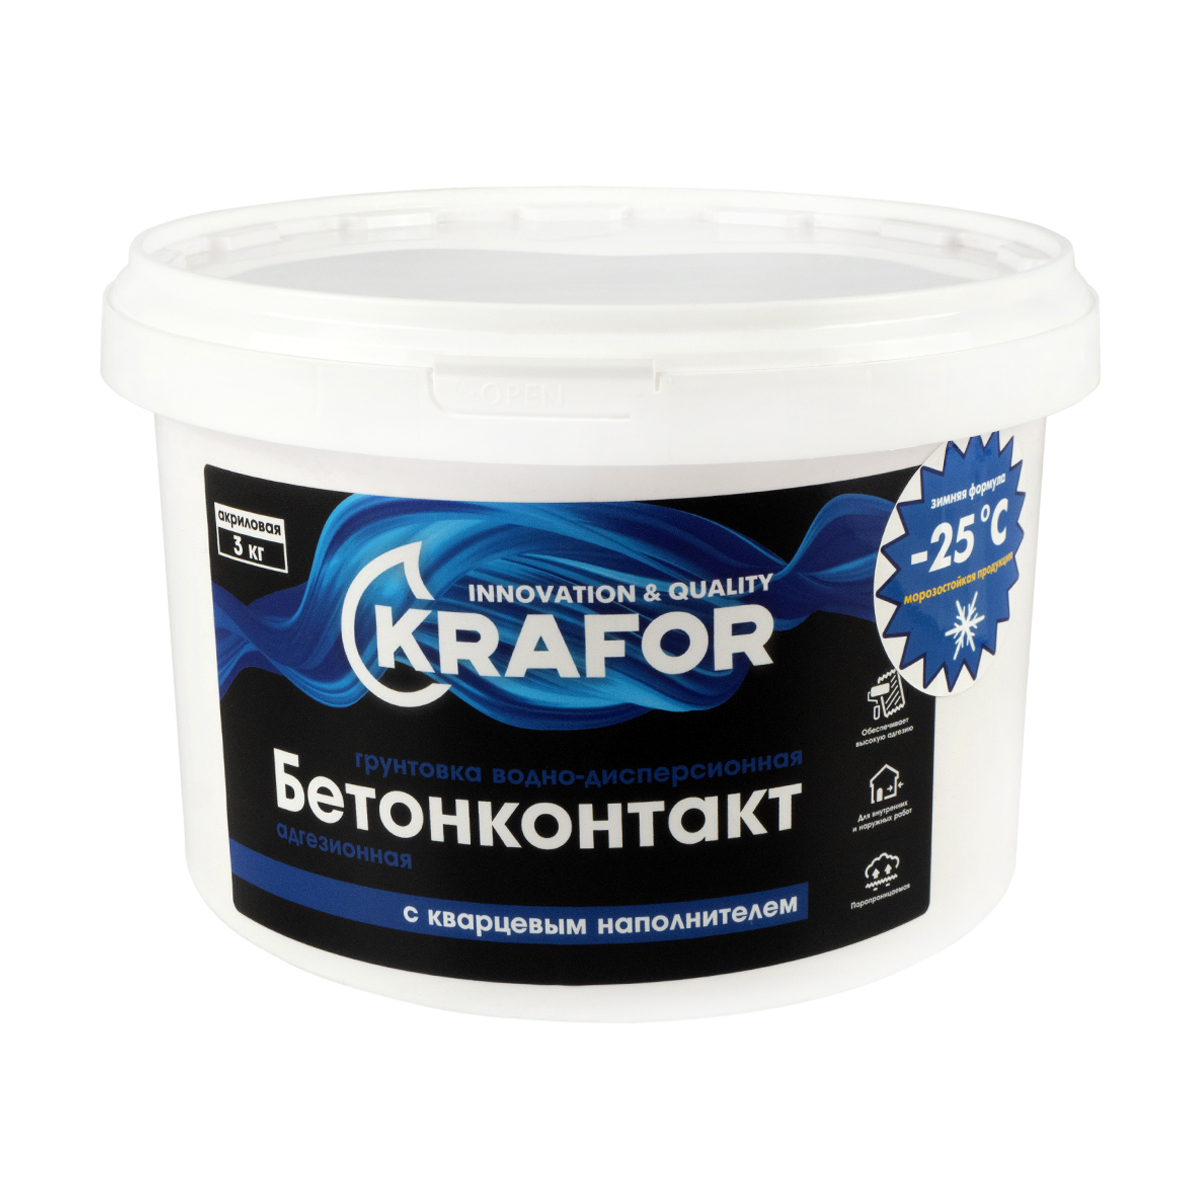 Грунтовка Krafor водно-дисперсионная бетонконтакт, 3 кг грунтовка для декоративных покрытий farbitex адгезионная с кварцевым наполнителем 43000